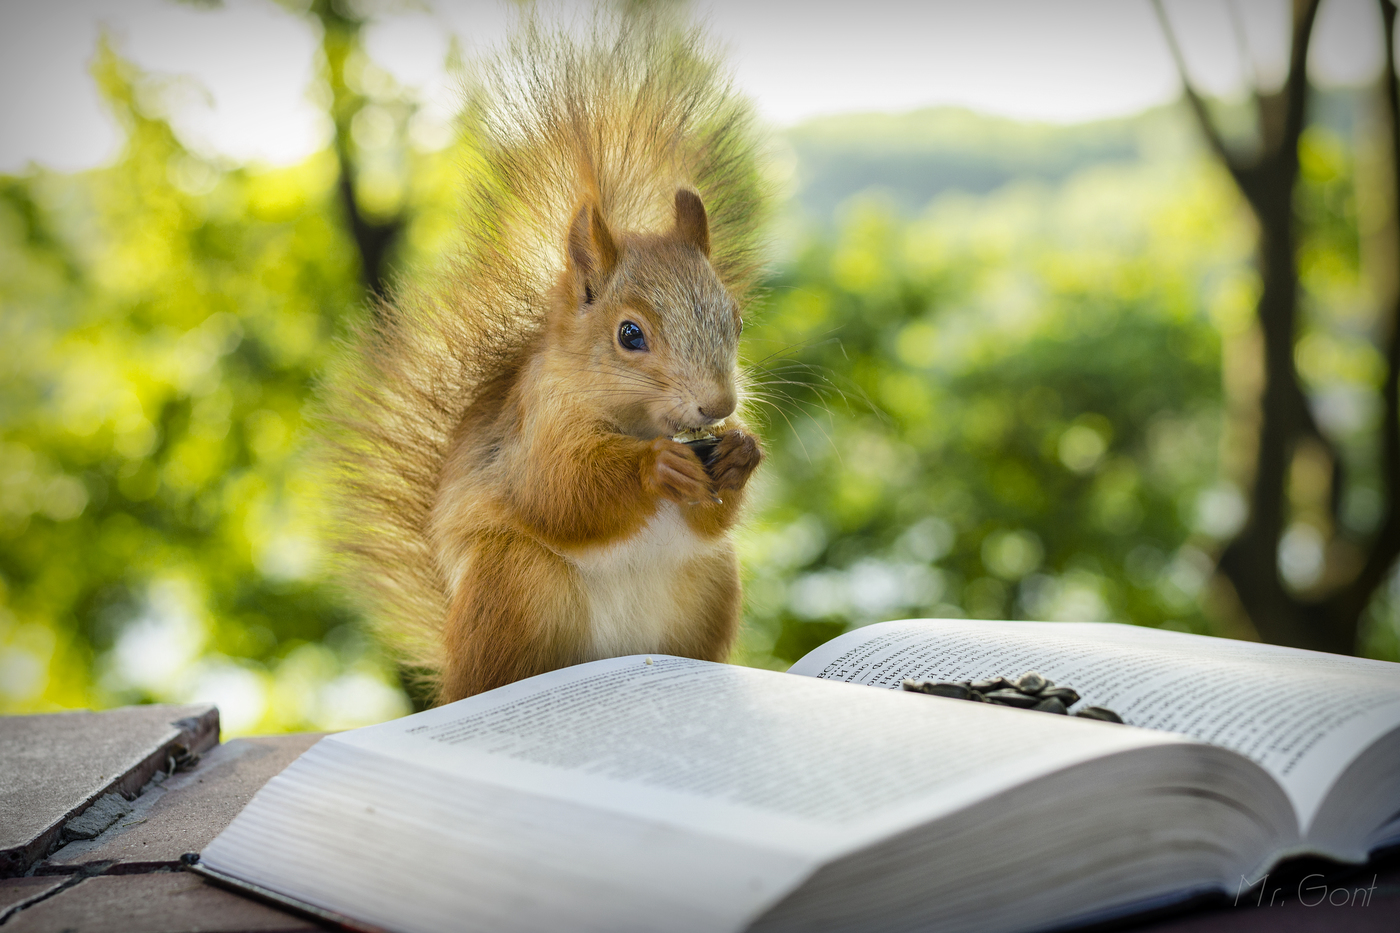 Squirrel "đọc" một cuốn sách